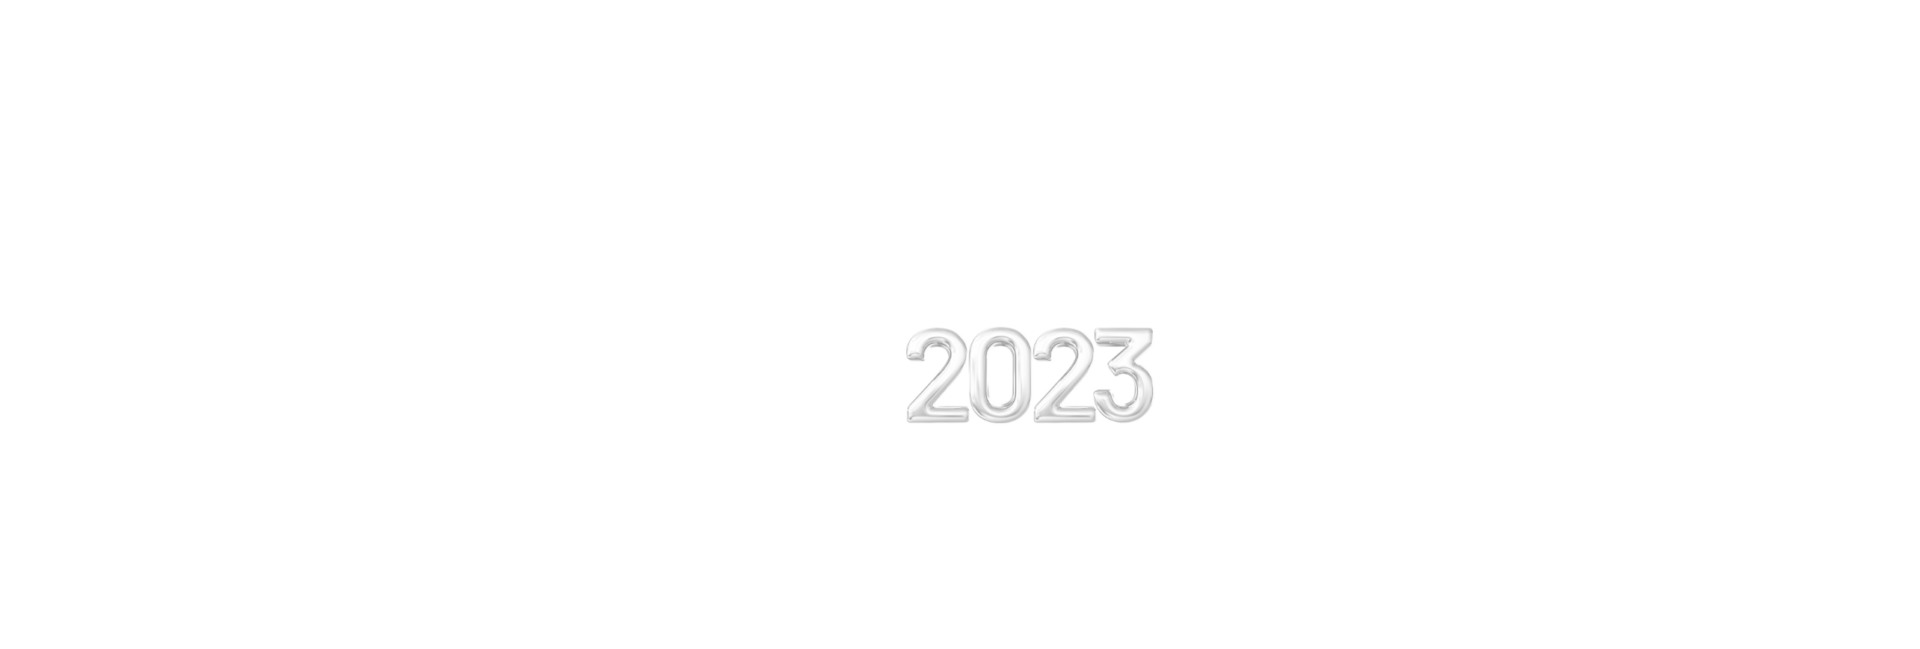 CoPS 2023 Enrollment Details